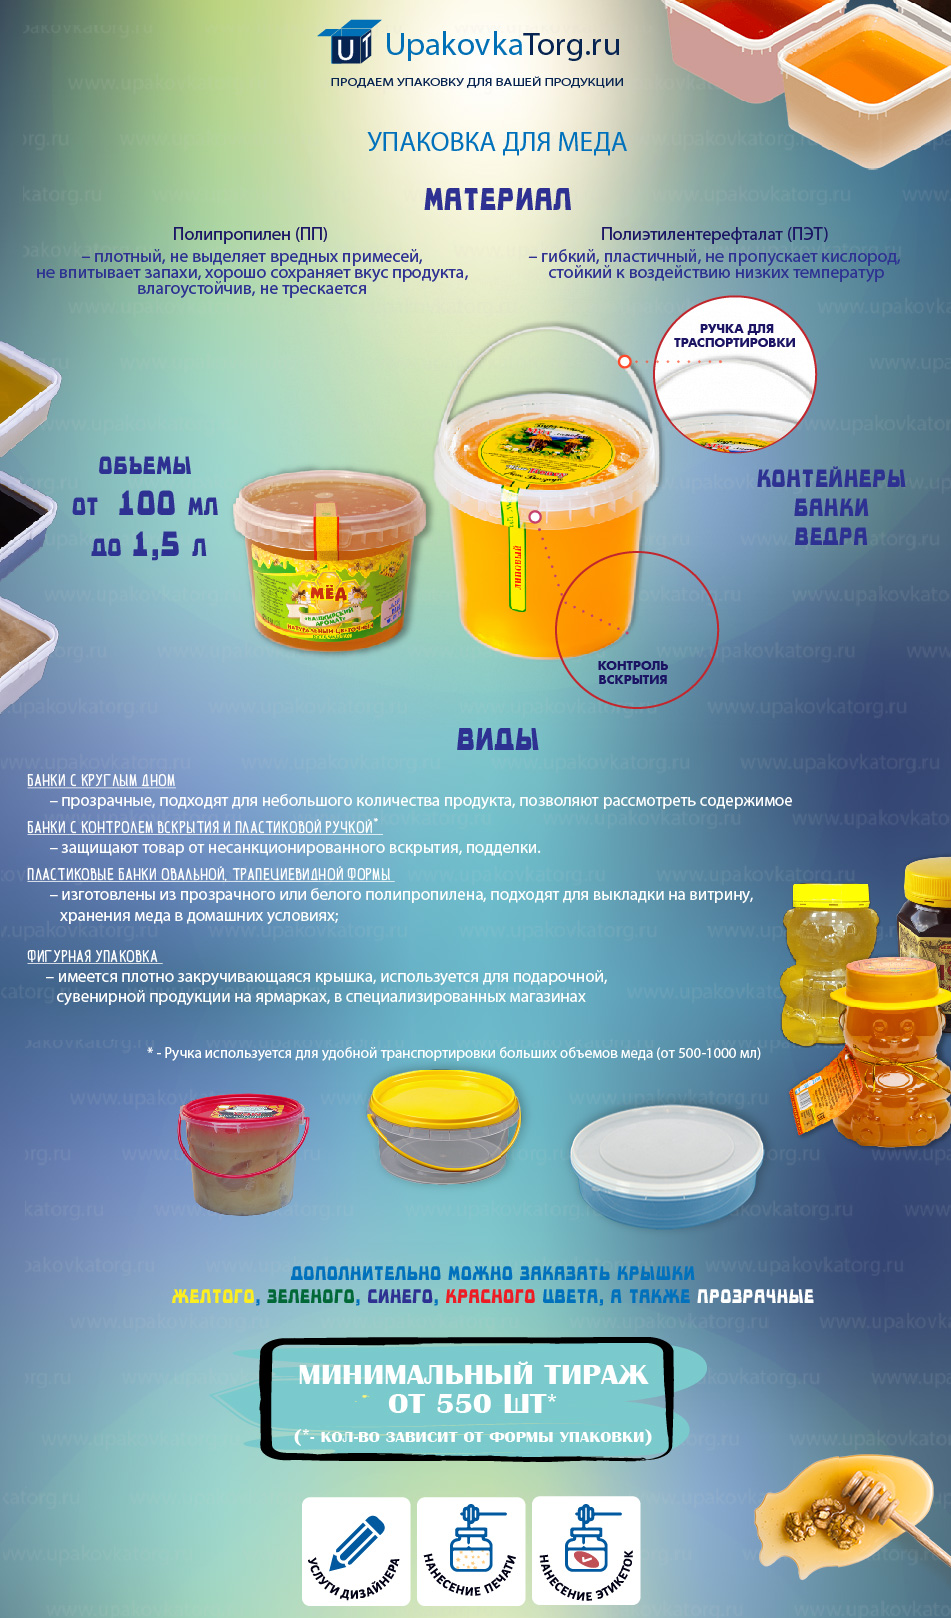 Упаковка для меда-инфографика